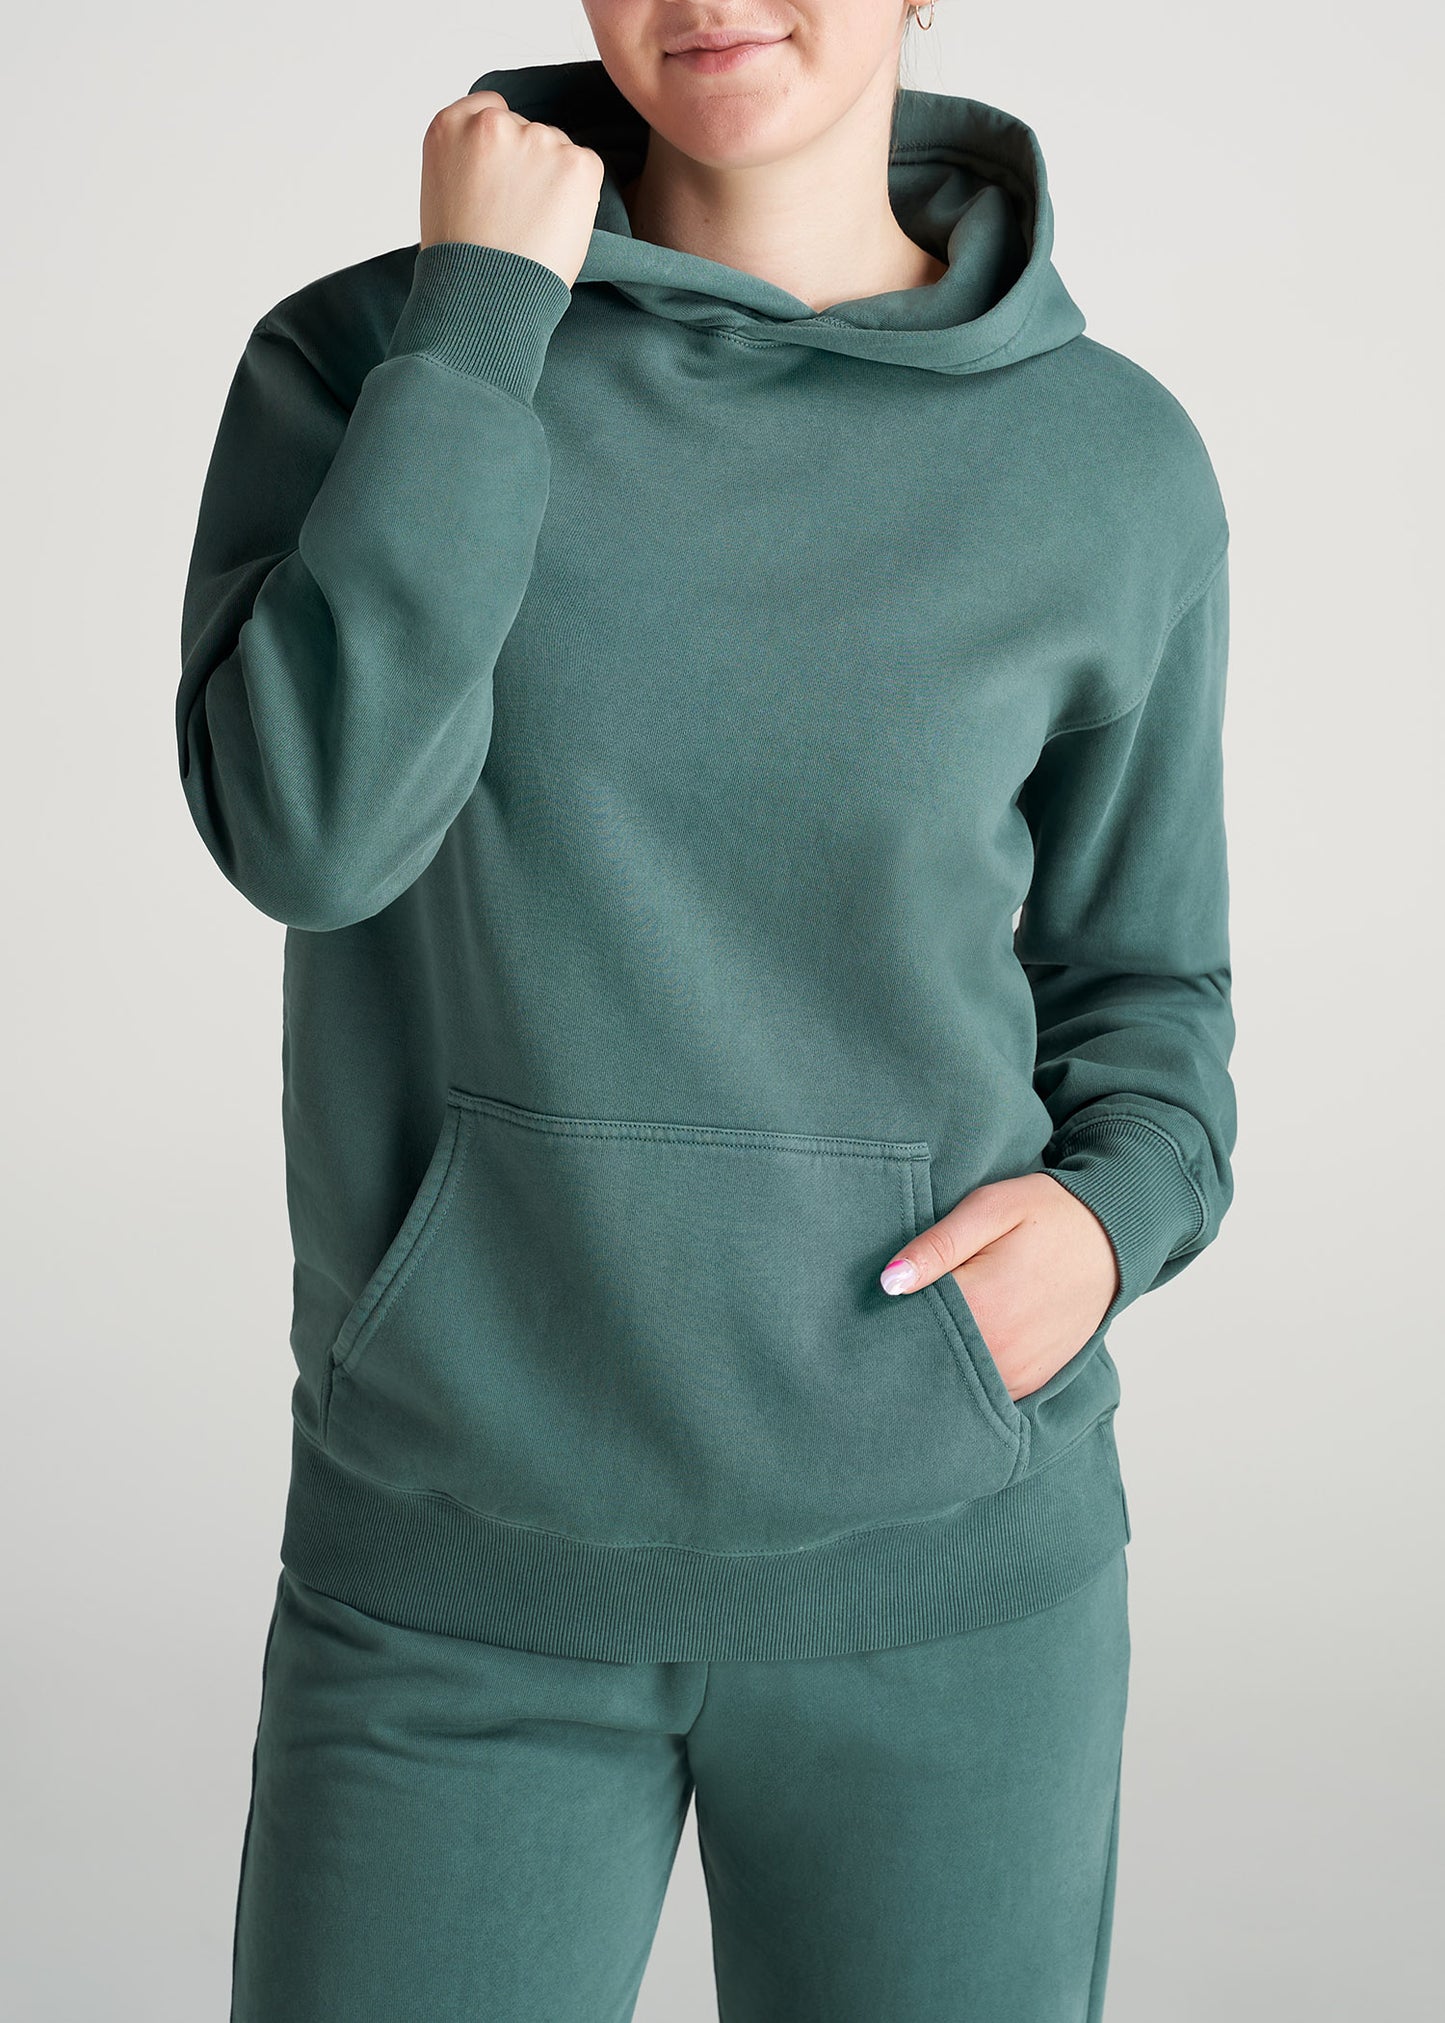 Wearever Fleece Garment-Dyed Pullover Hoodie for Tall Women in Juniper Green XS / Tall / Juniper Green